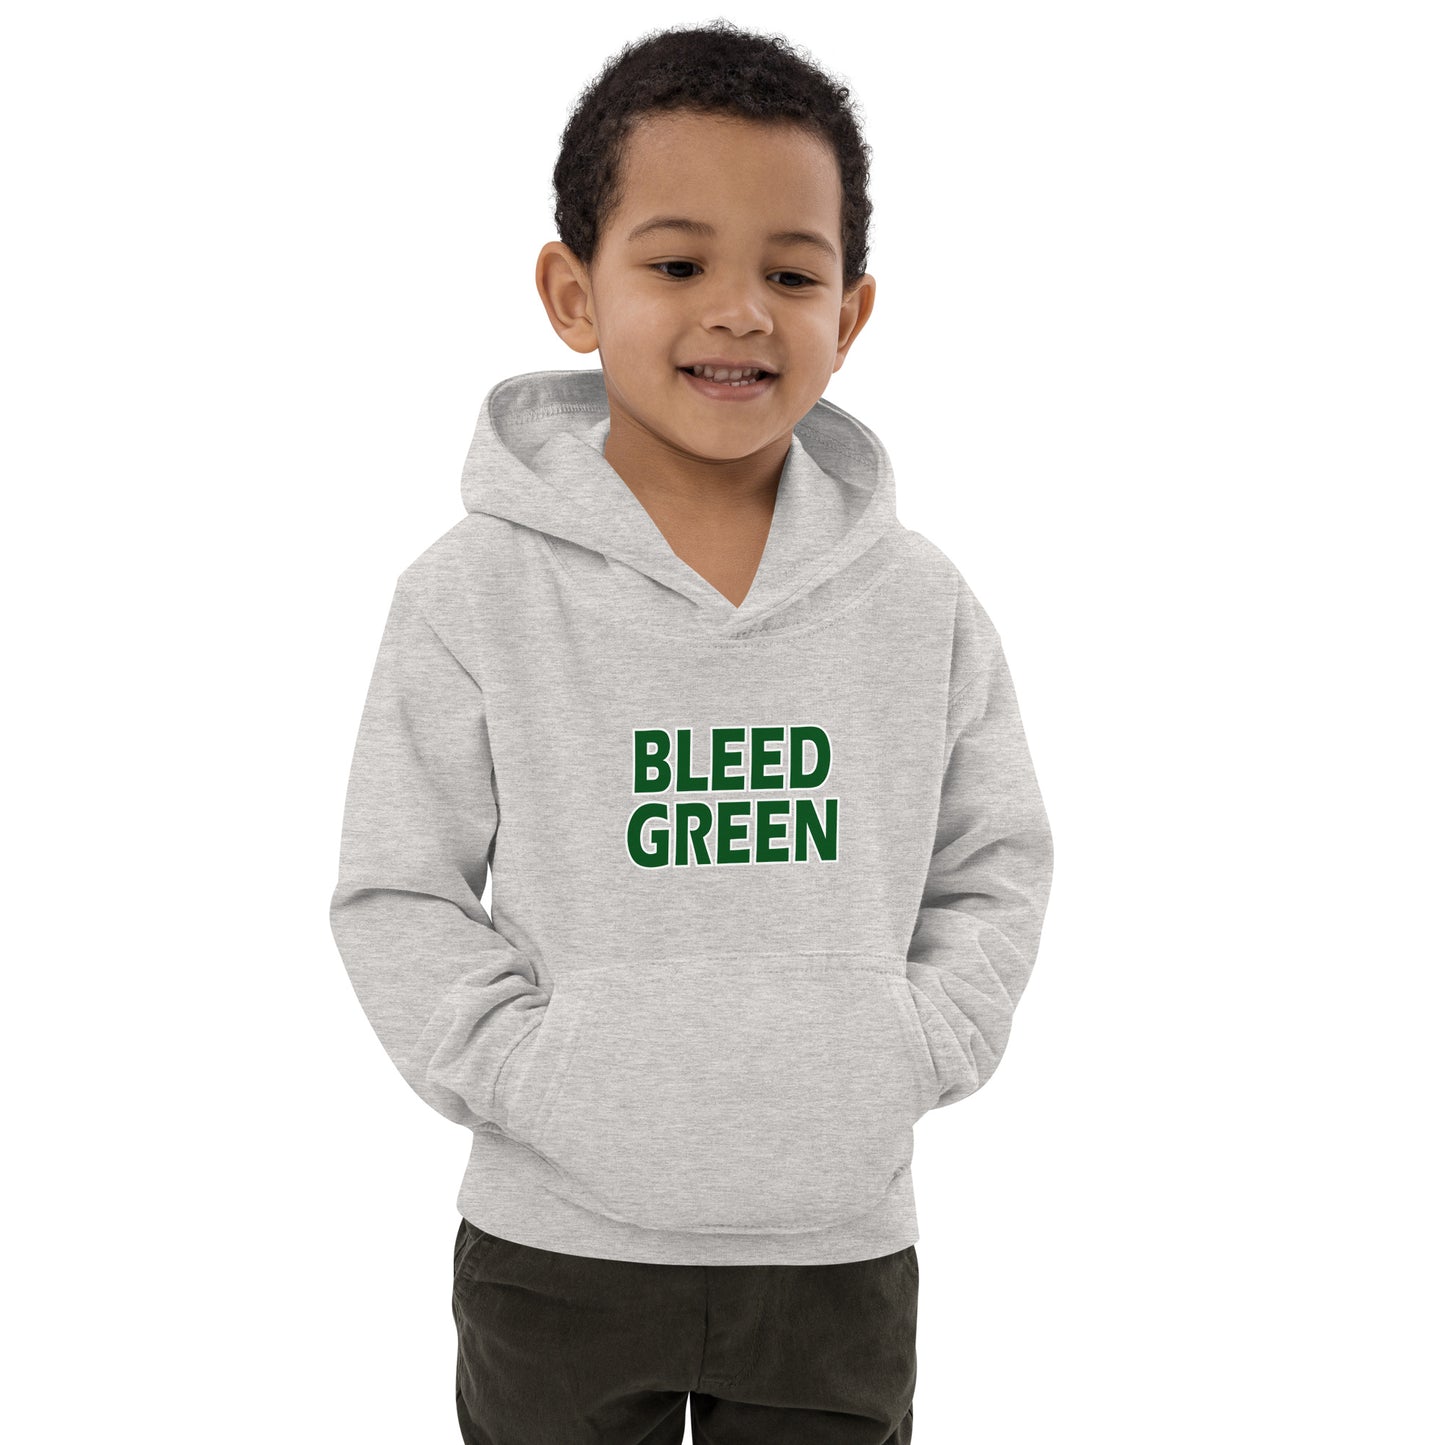 Bleed Green Kids Hoodie